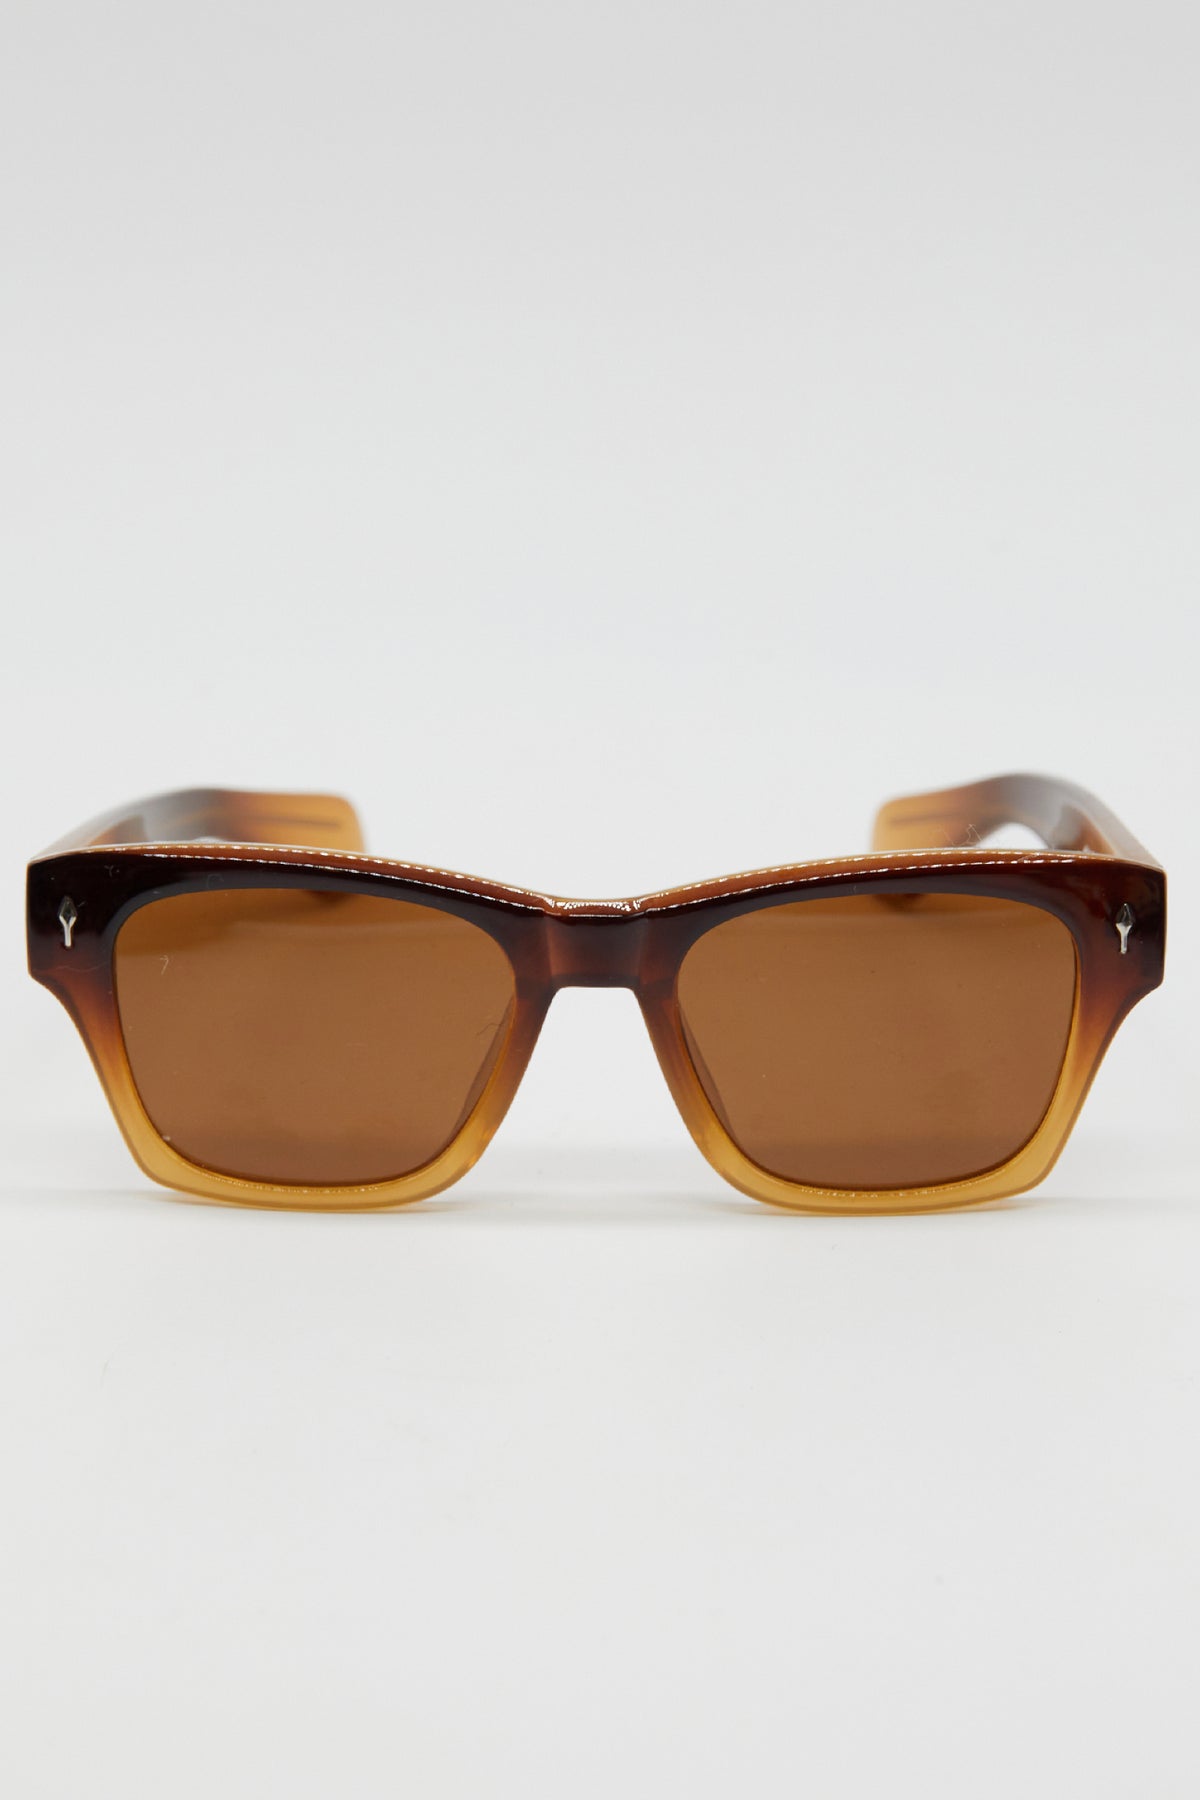 Harper Coffee Sunglasses